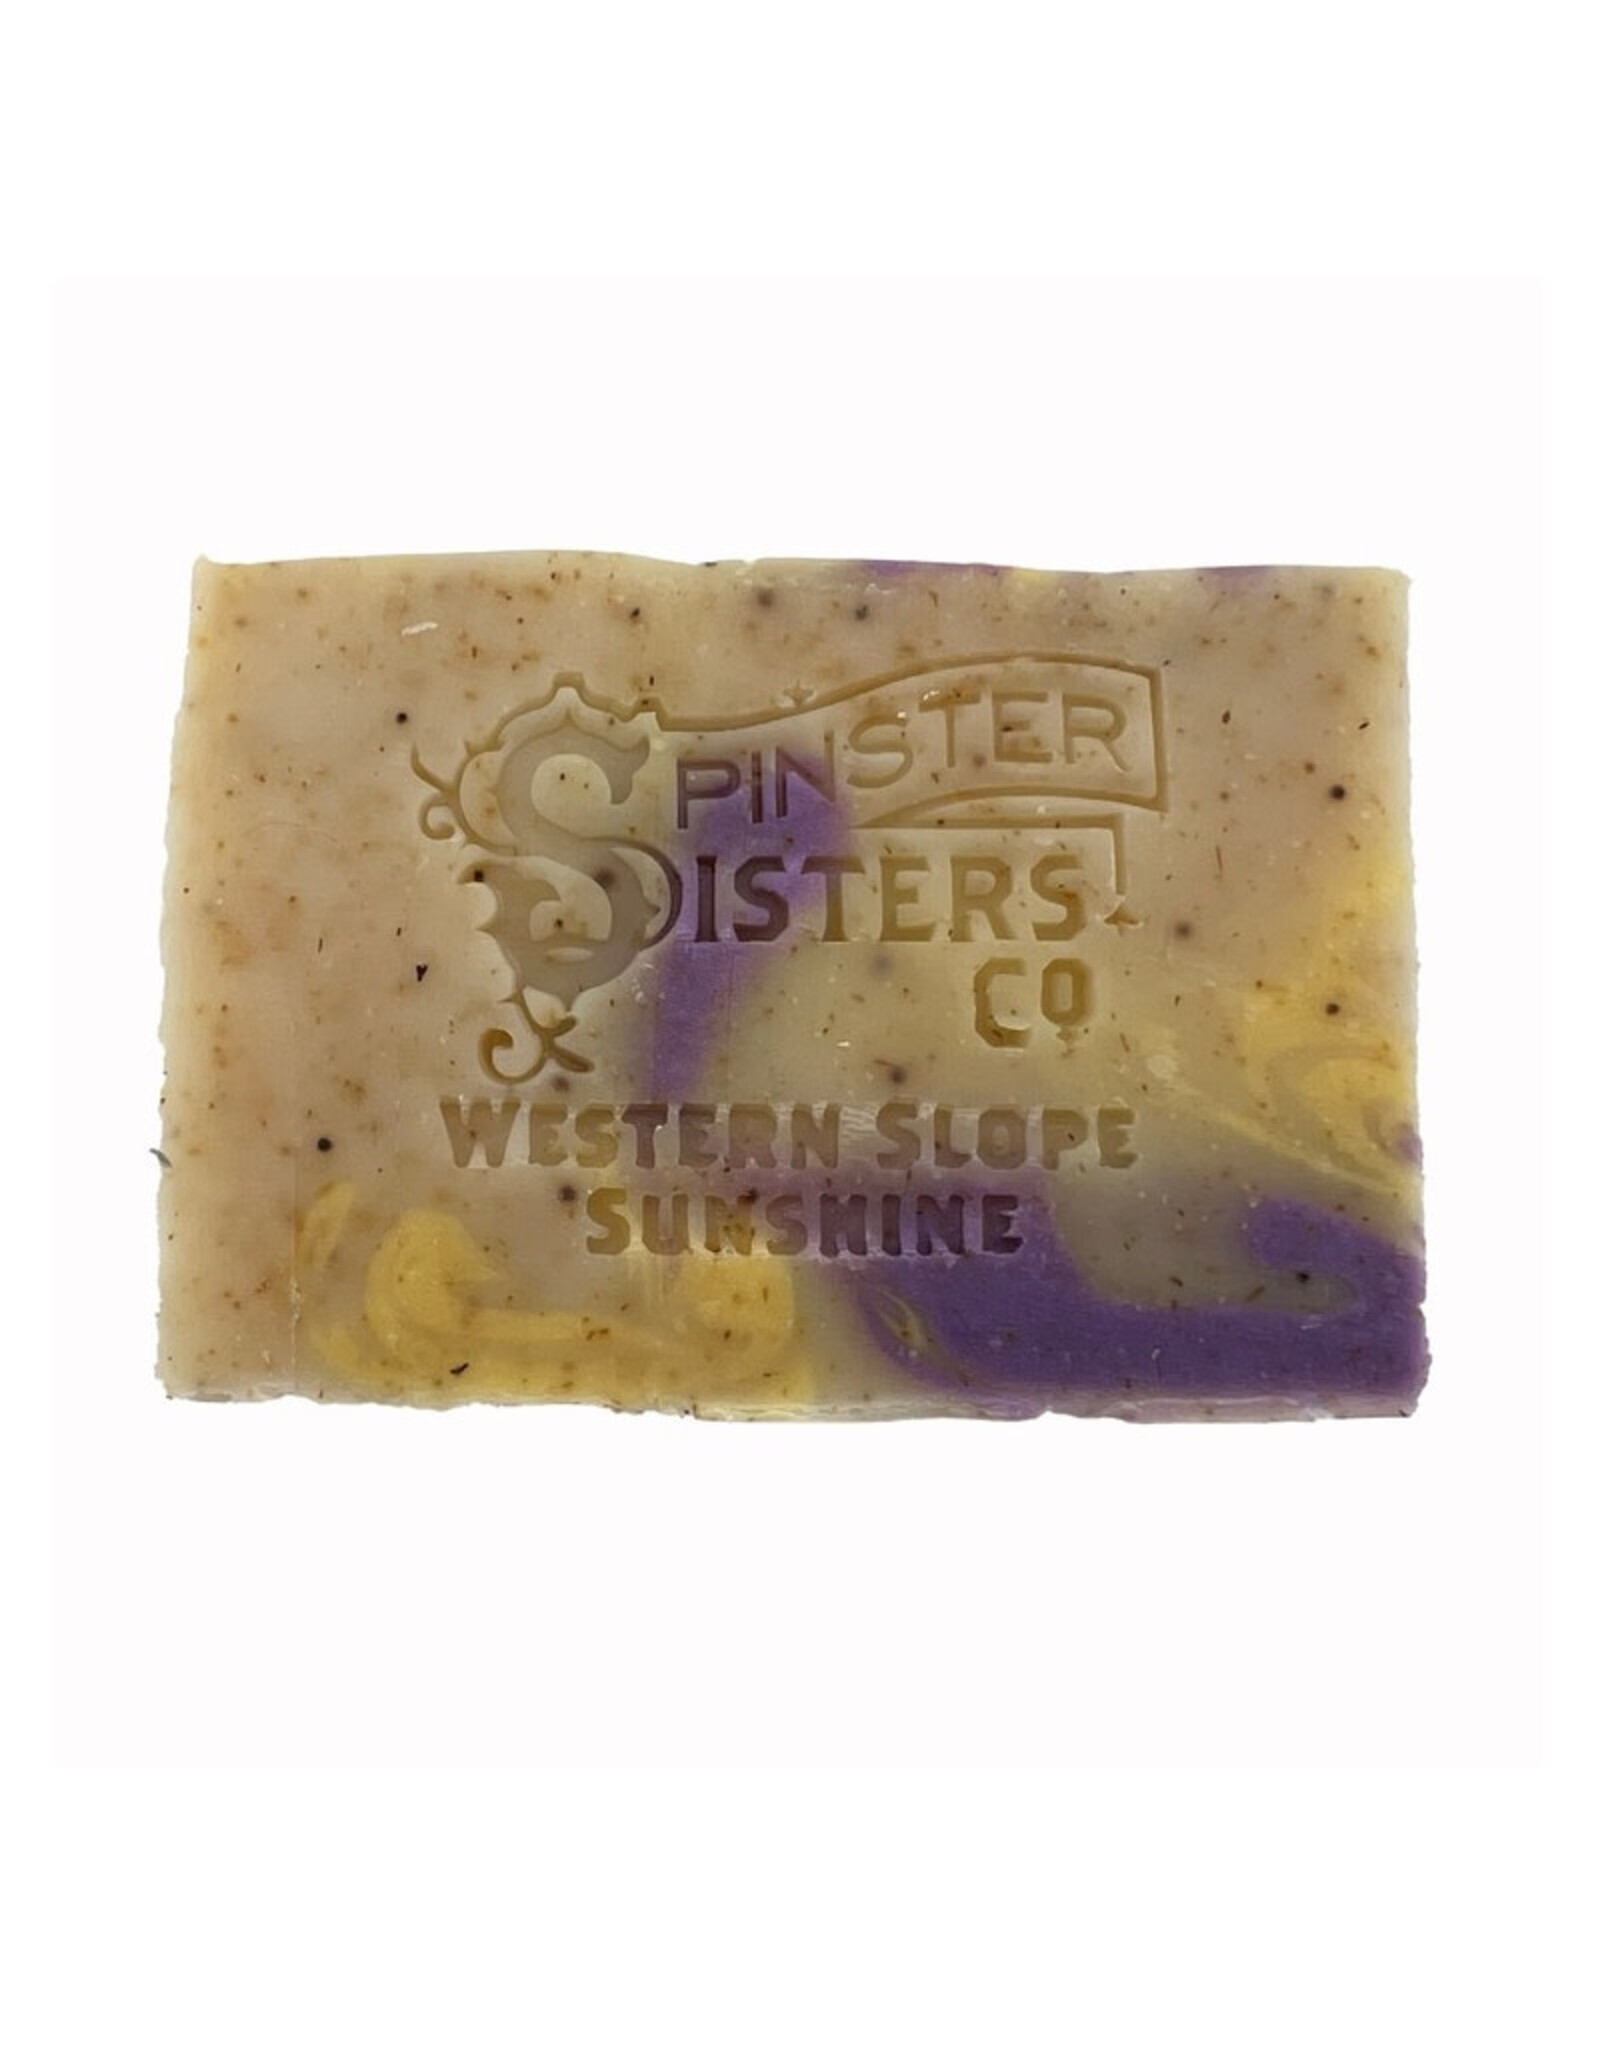 Spinster Sisters Western Slope Sunshine Naked Bar Soap